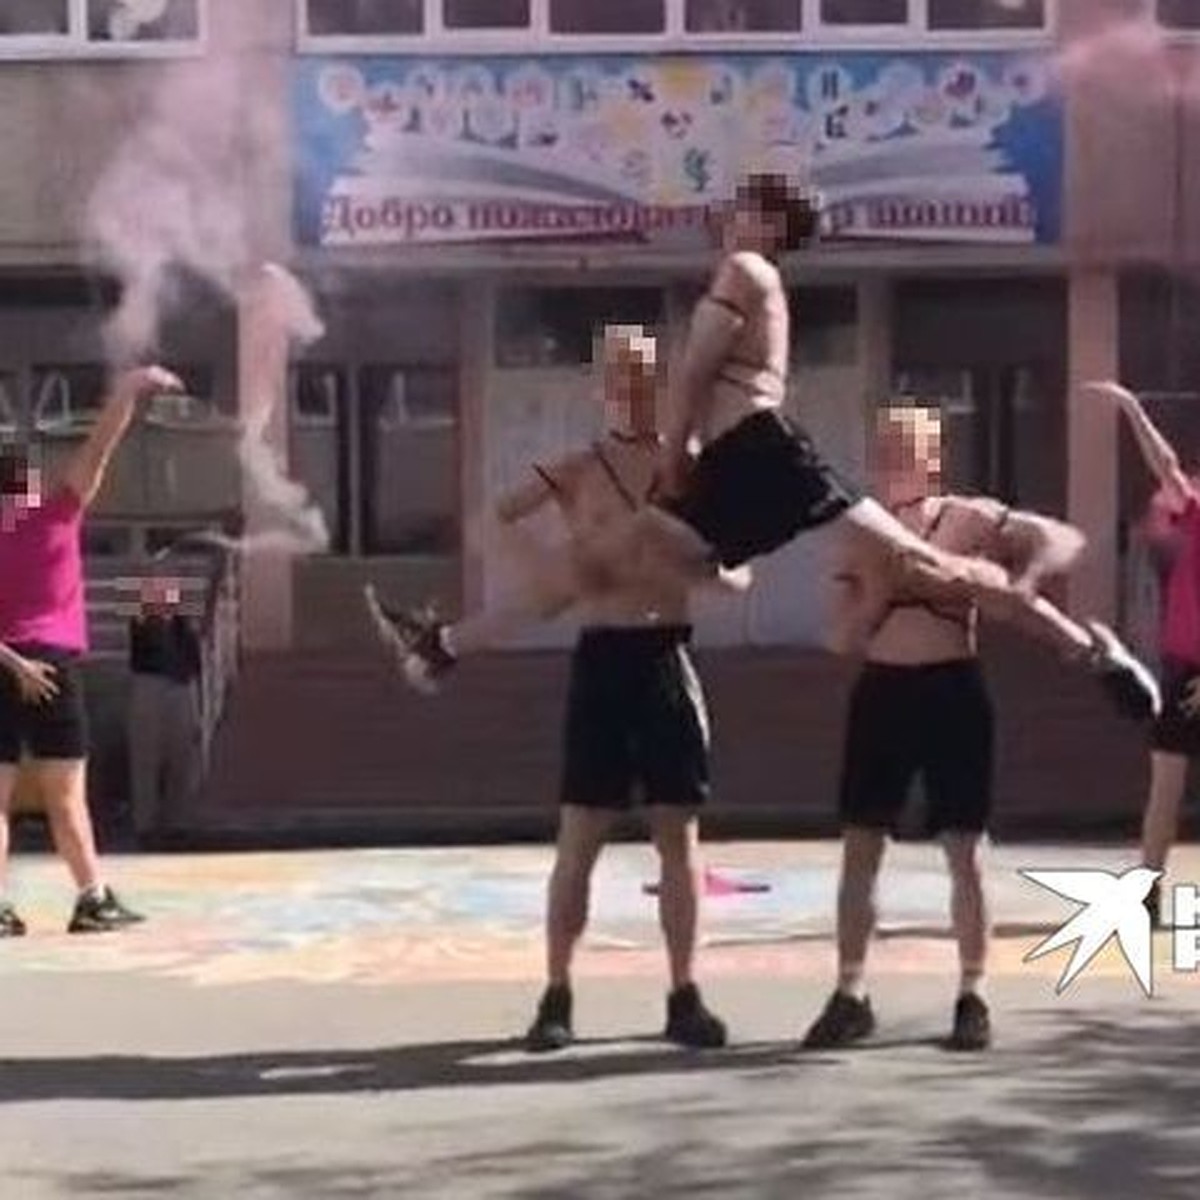 ЛГБТ-скандал в лицее Екатеринбурга: что известно на 6 июня 2022 - KP.RU